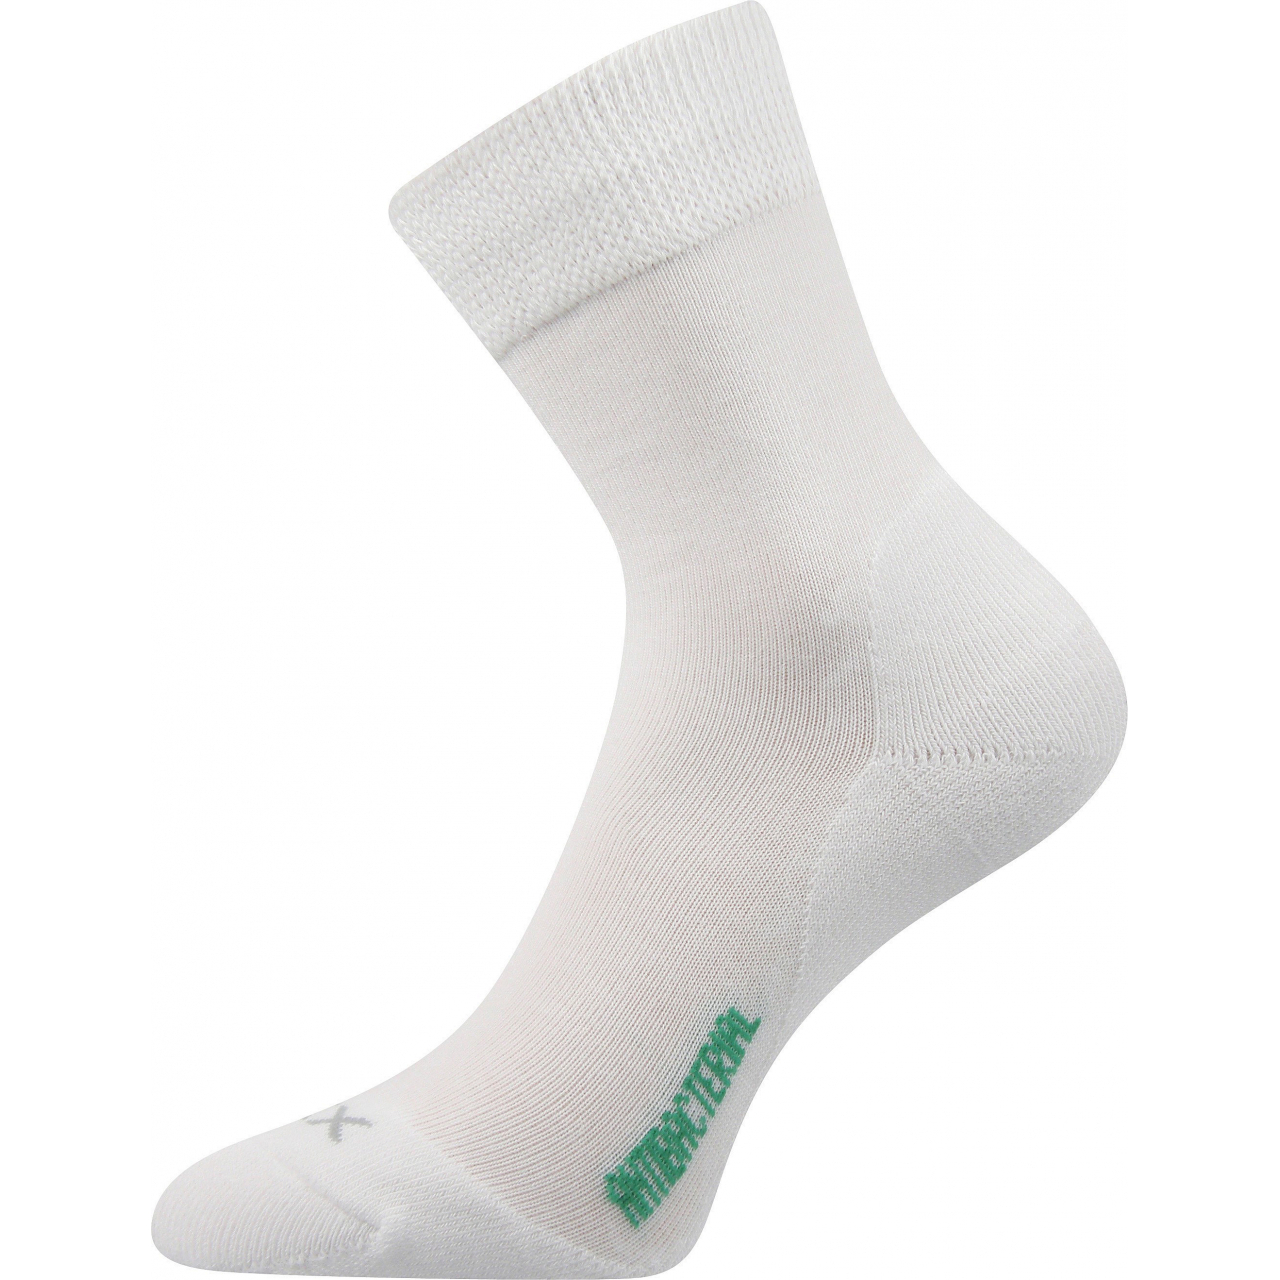 Ponožky zdravotní Voxx Zeus - bílé, 43-46